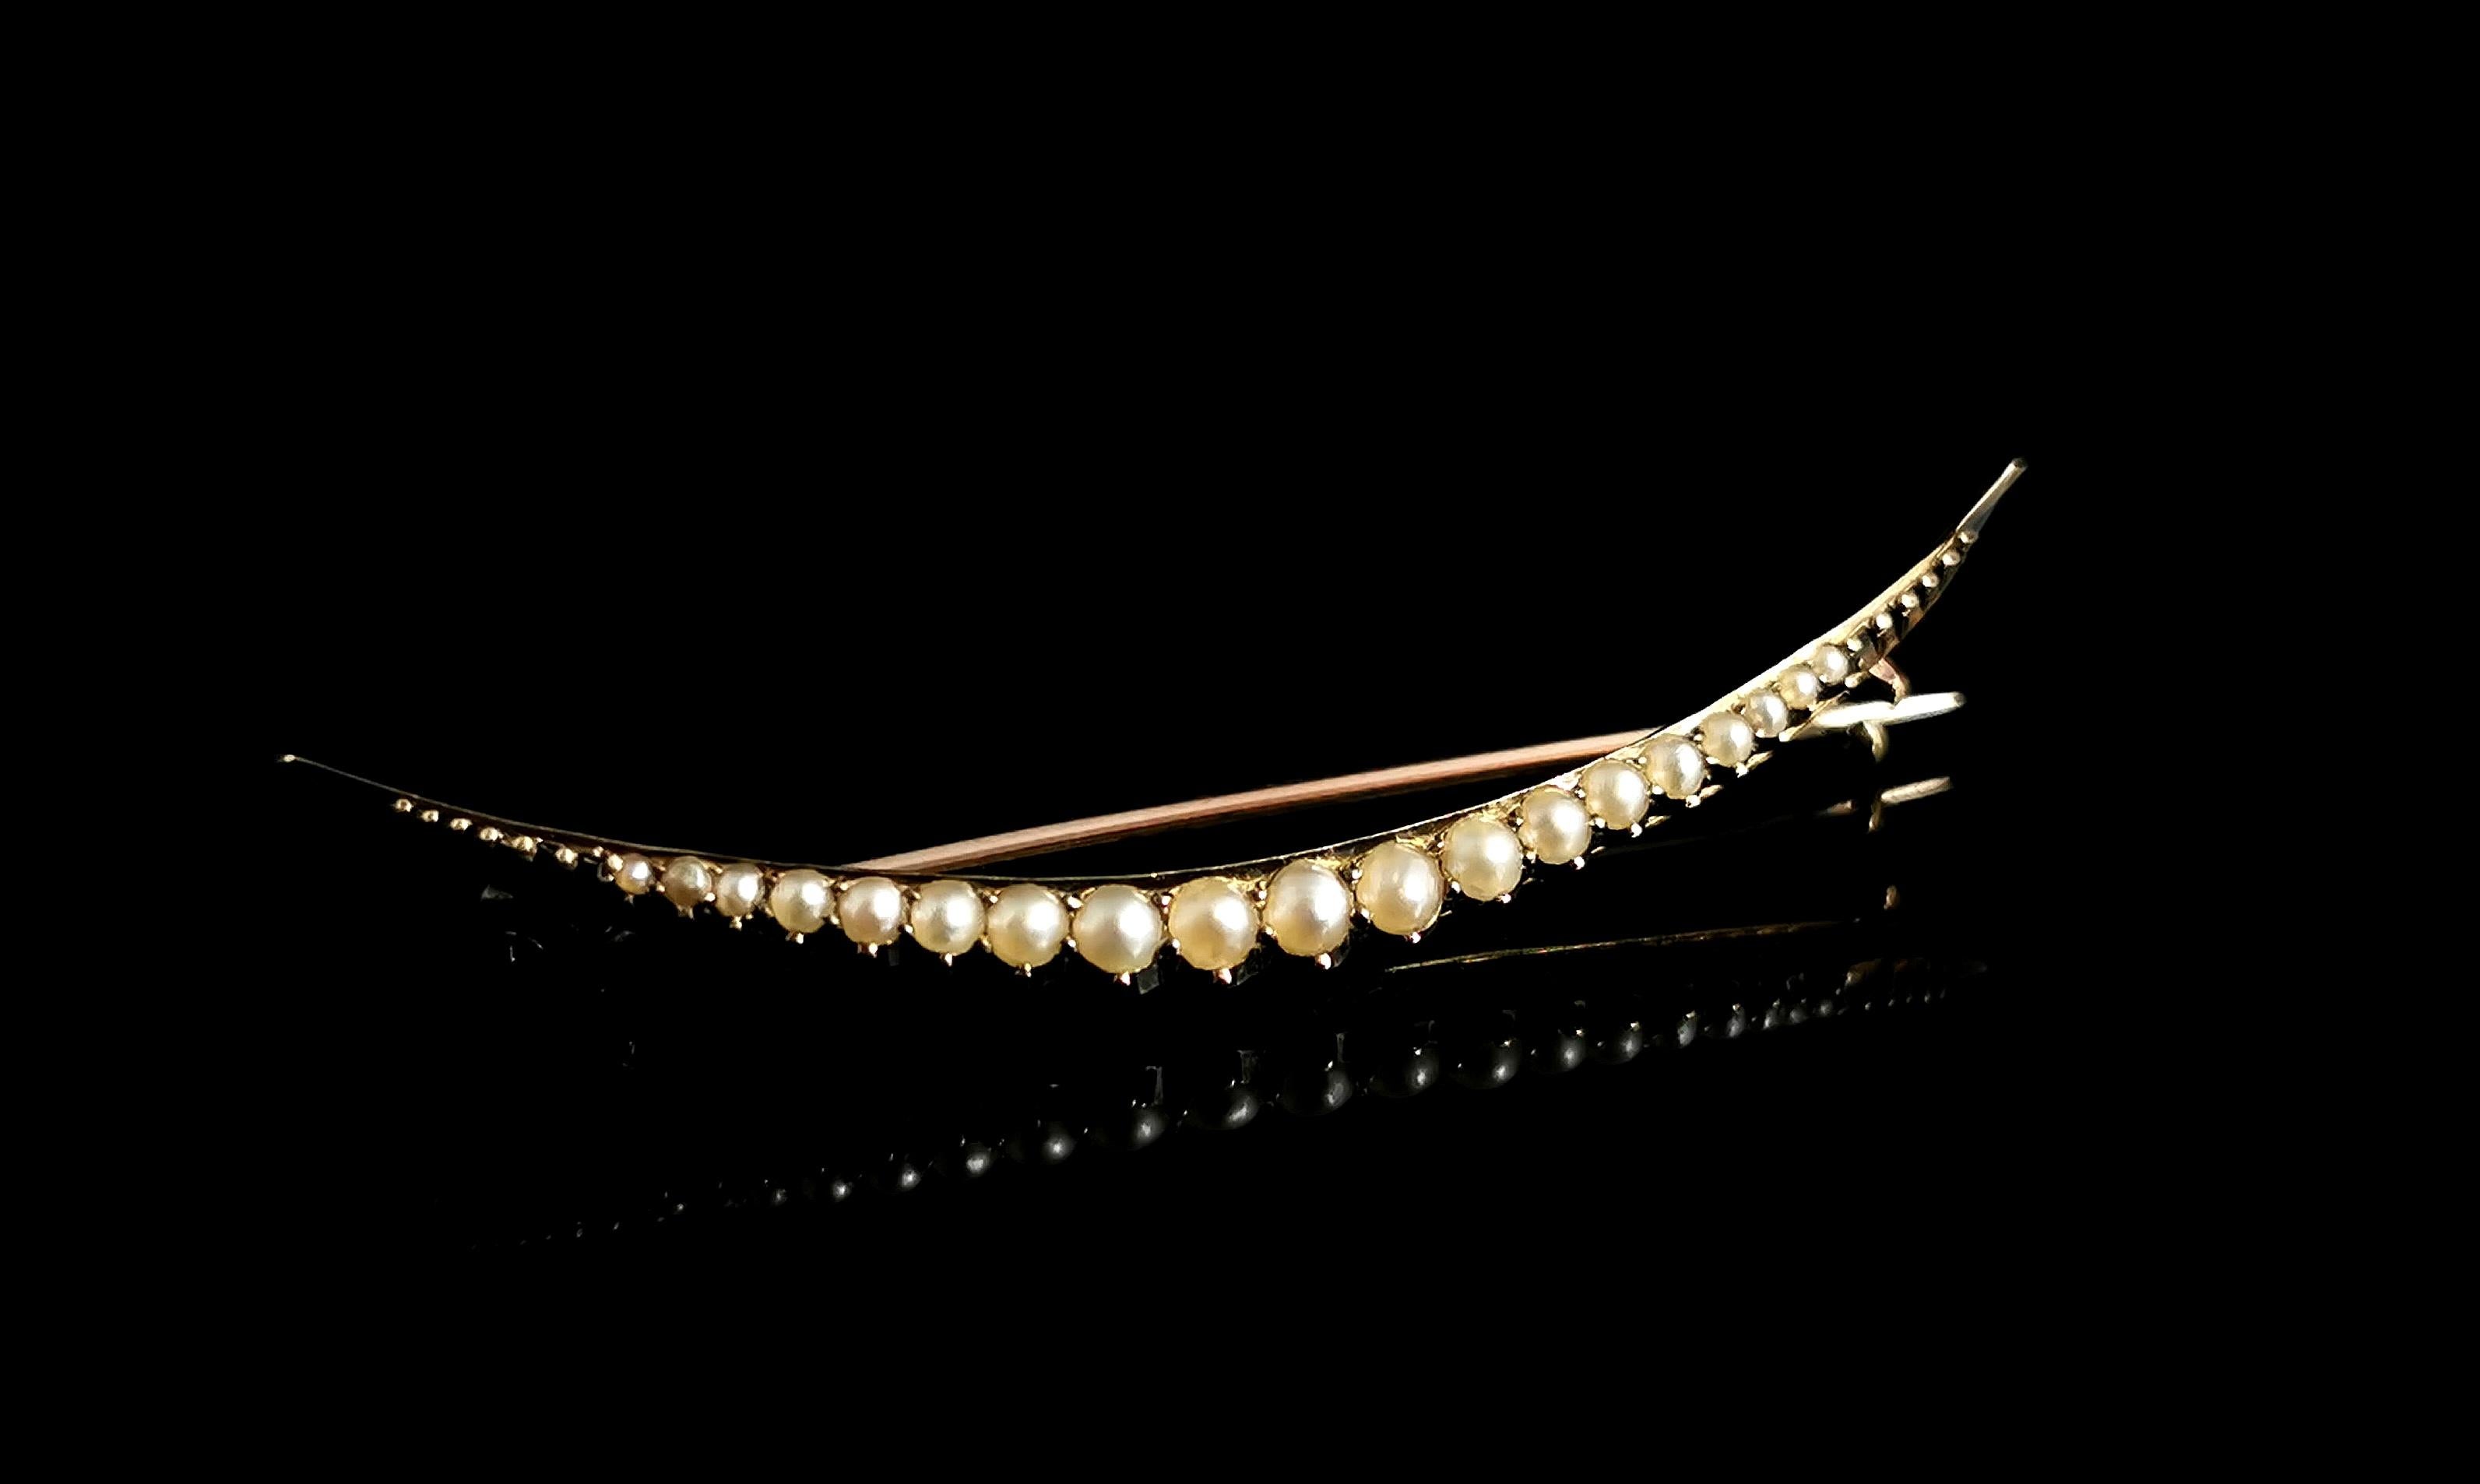 Une magnifique broche antique, fin de l'époque victorienne, en or 9kt et perle fendue en forme de croissant.

Un magnifique croissant ouvert en or jaune 9 carats, serti de perles fendues de couleur crème qui vont des extrémités vers le centre.

Les